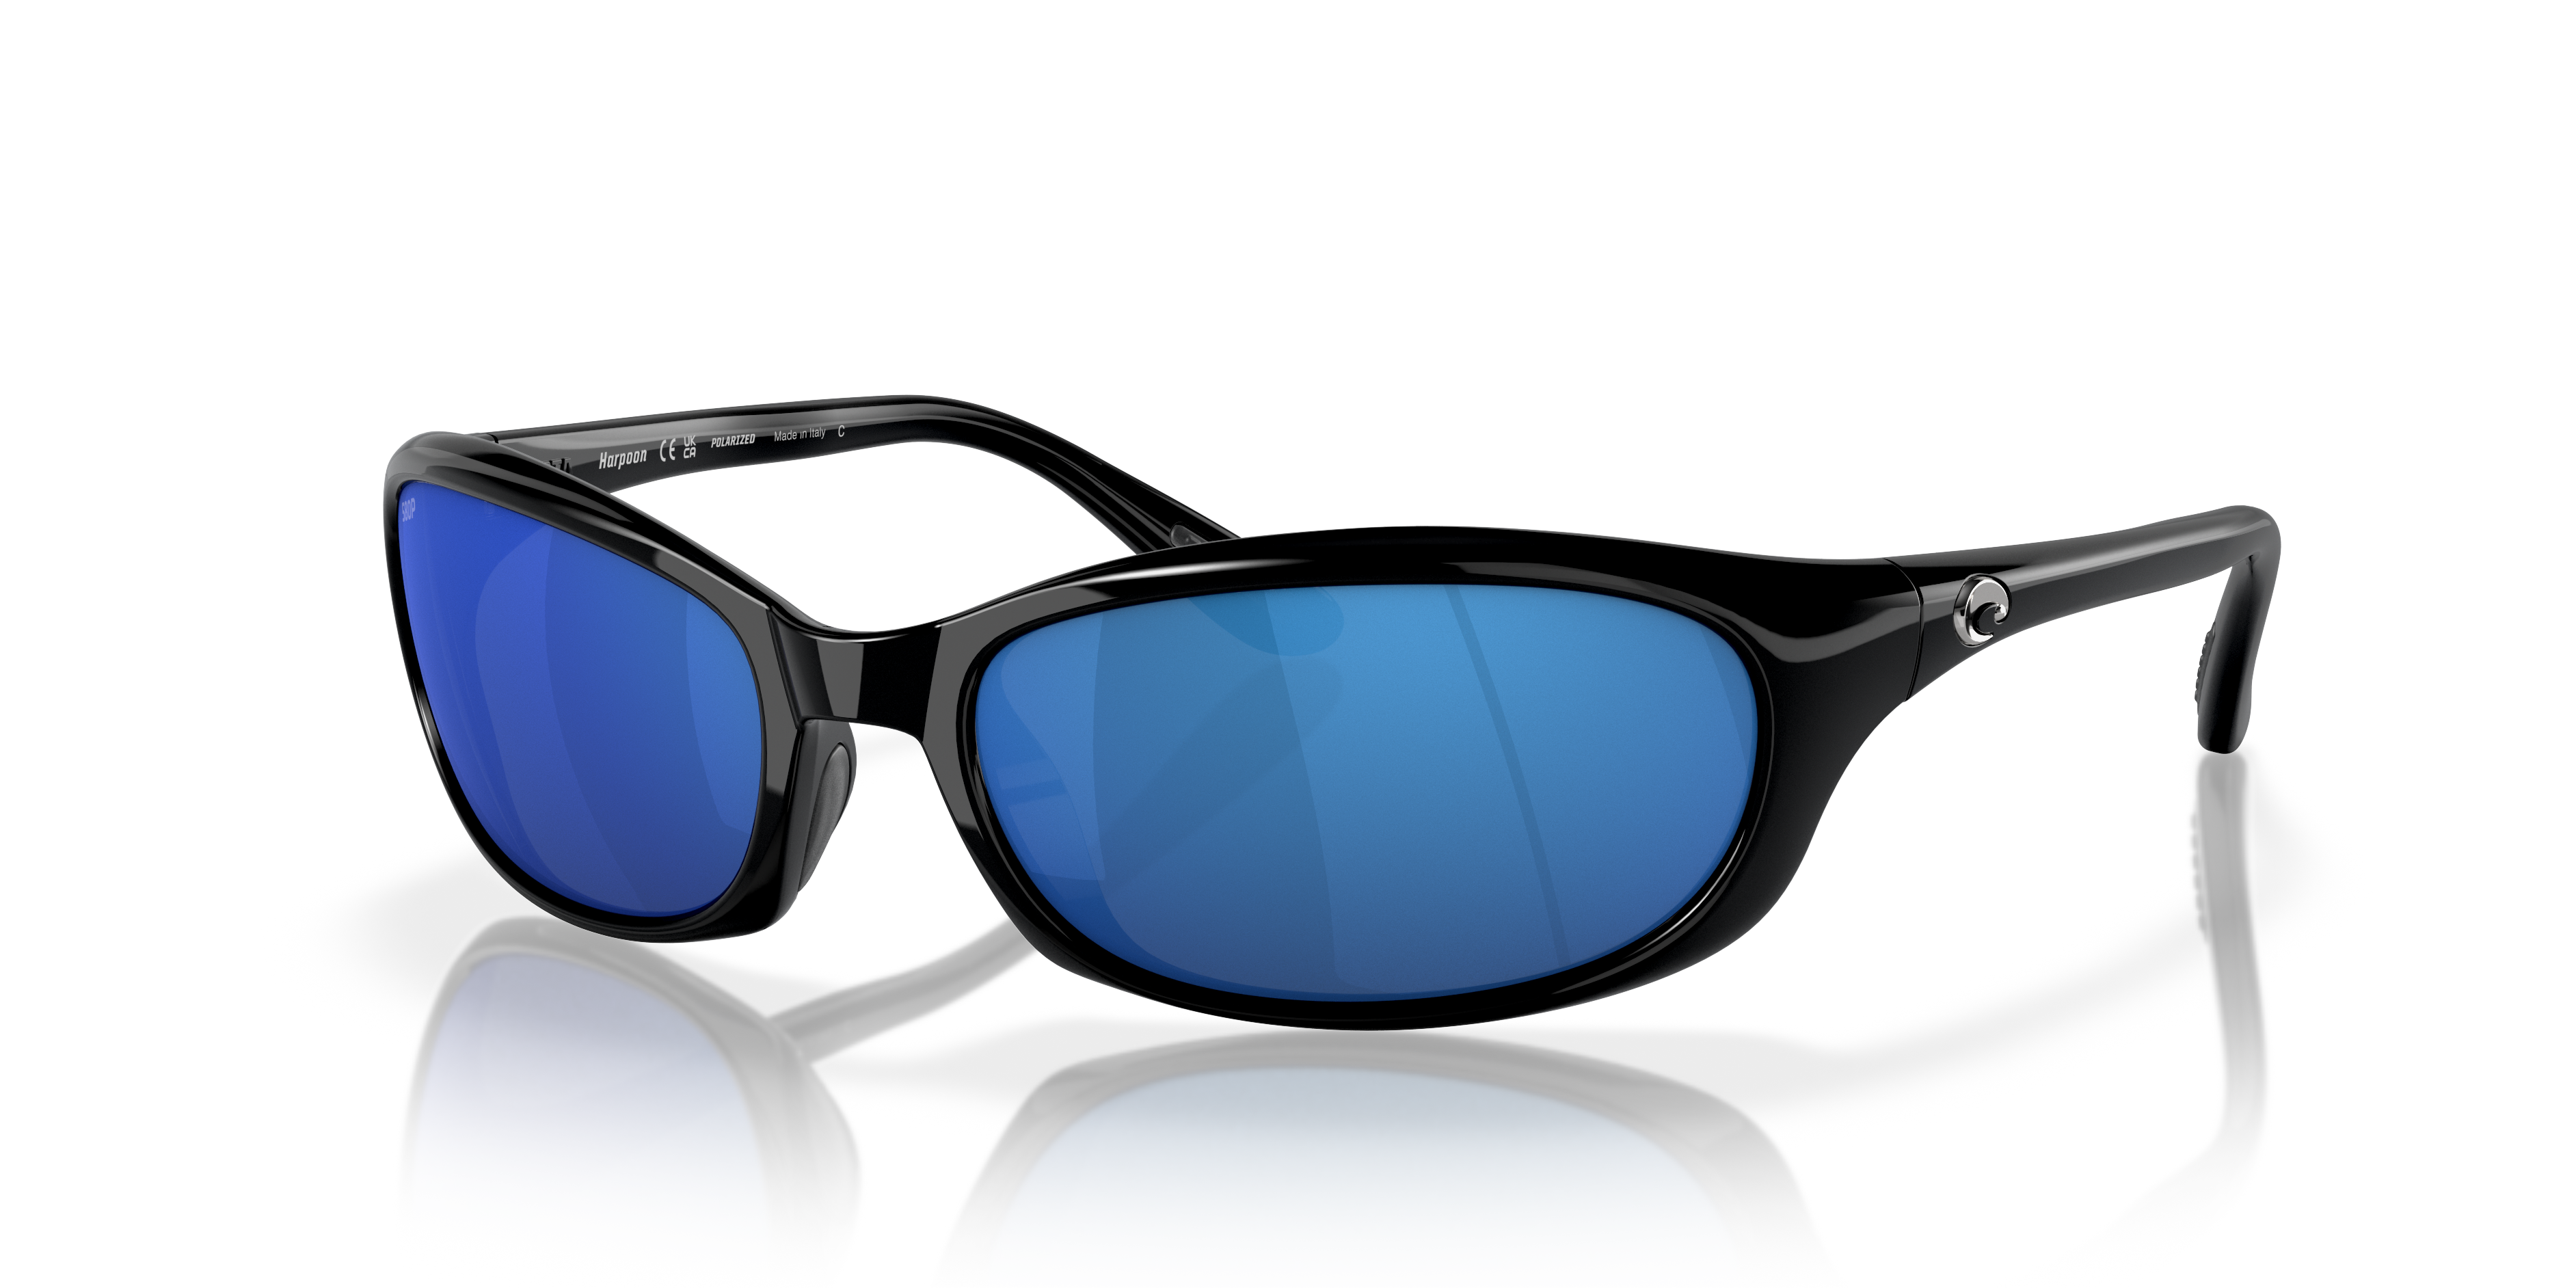 Harpoon Polarized Sunglasses in Blue Mirror | Costa Del Mar®